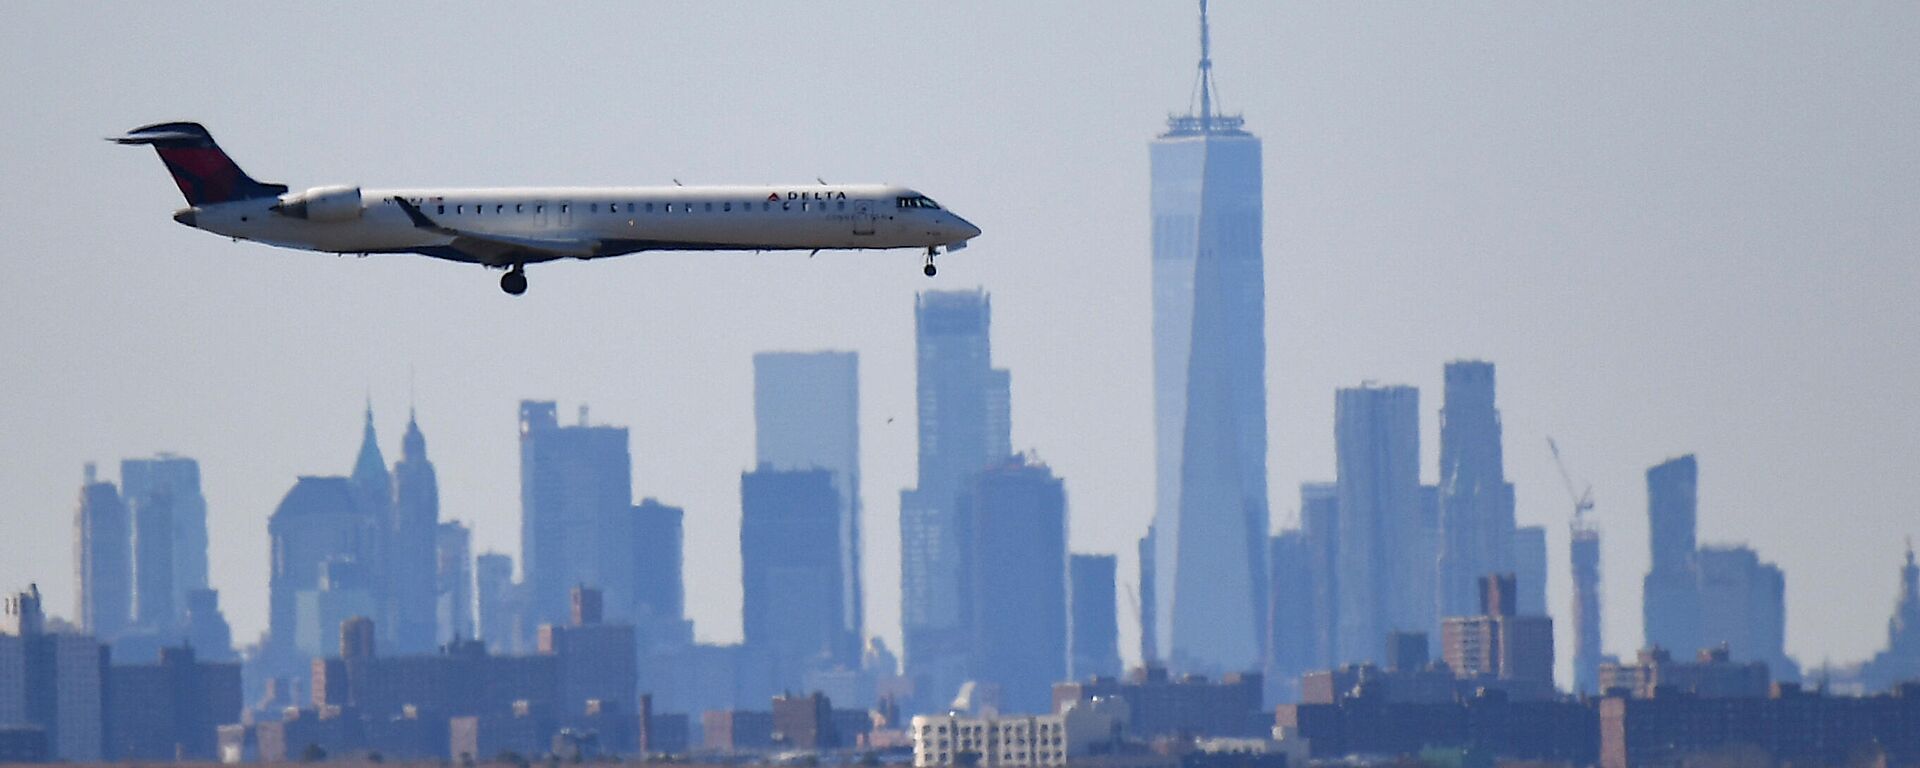 Самолет над Манхэттеном перед приземлением в аэропорту имени Джона Кеннеди - Sputnik Беларусь, 1920, 03.11.2021